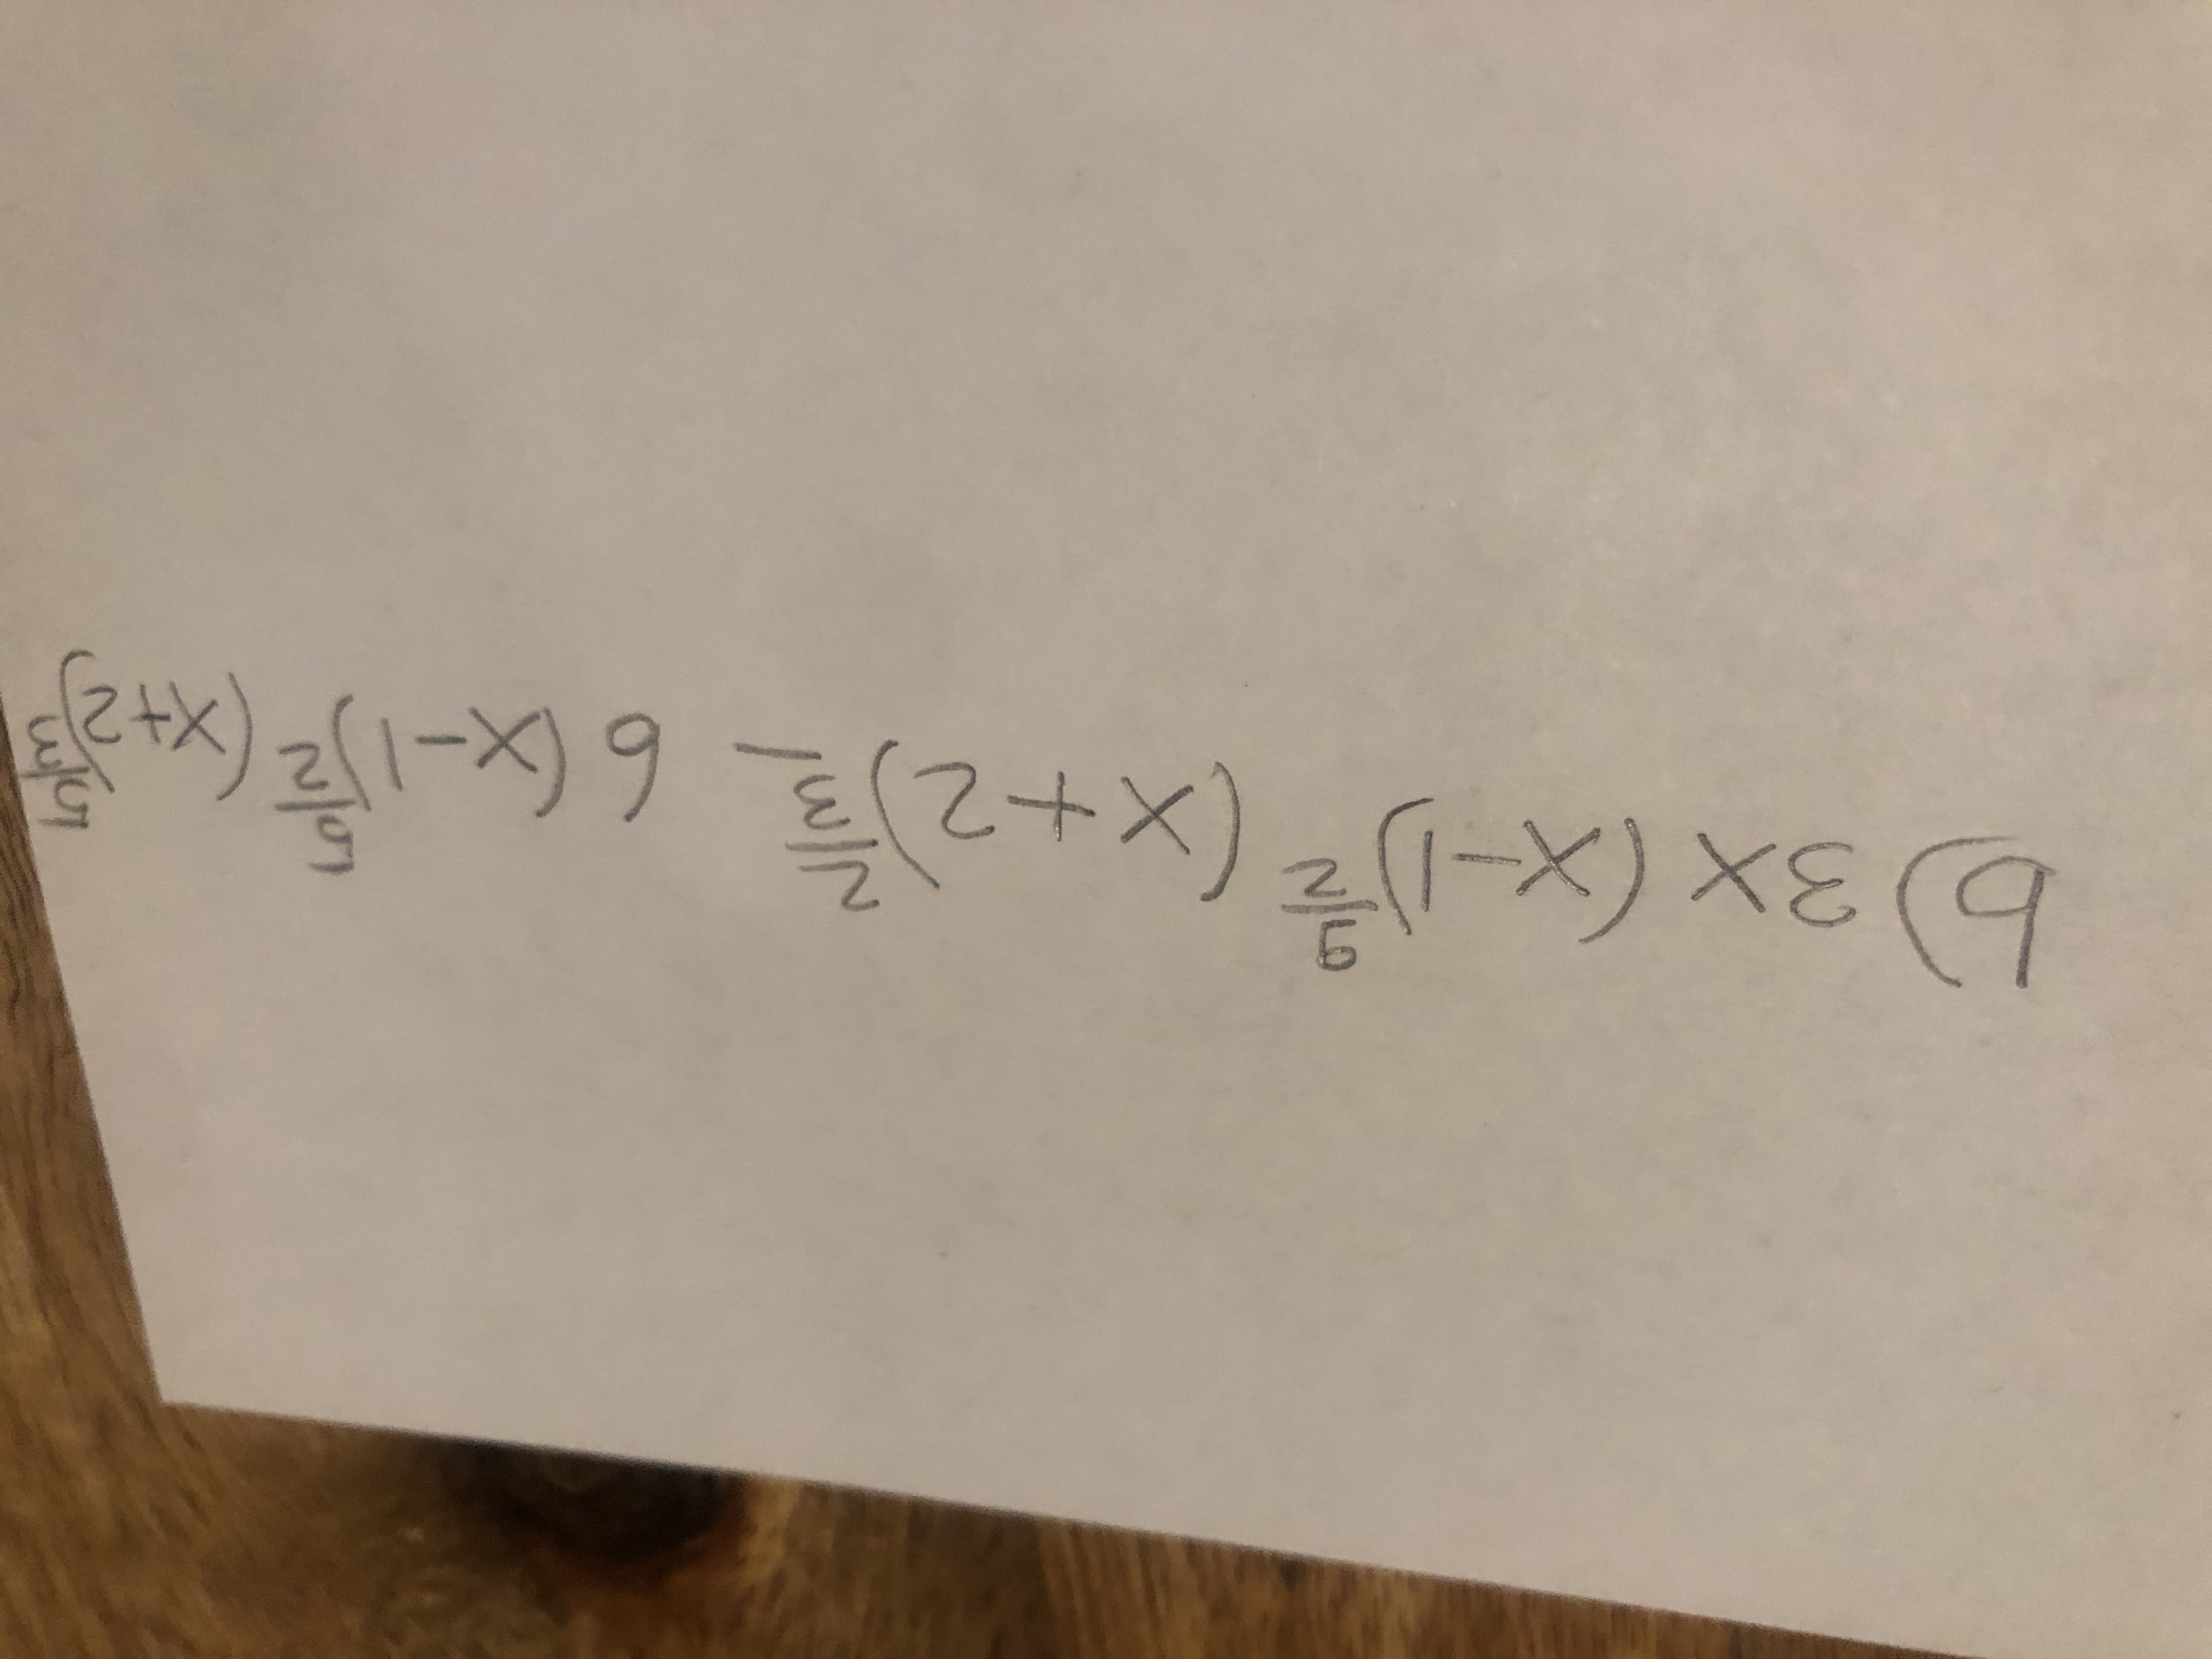 b) 3x(x-リを(x+2置6x-度(税)
